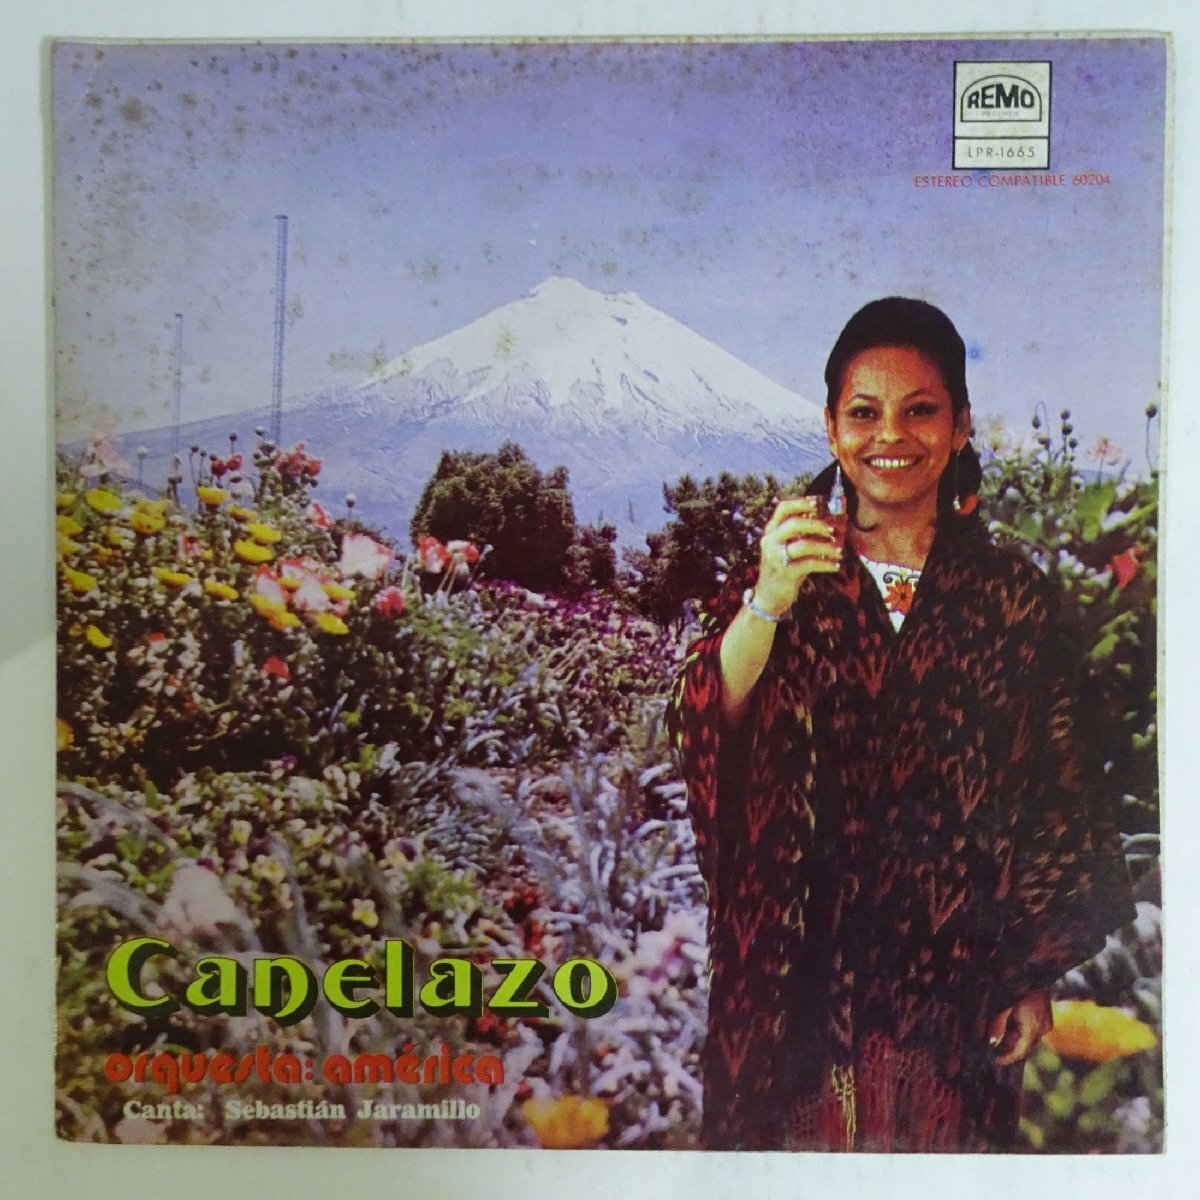 11186337;【US盤/Latin】Orquesta America / Canelazoの画像1